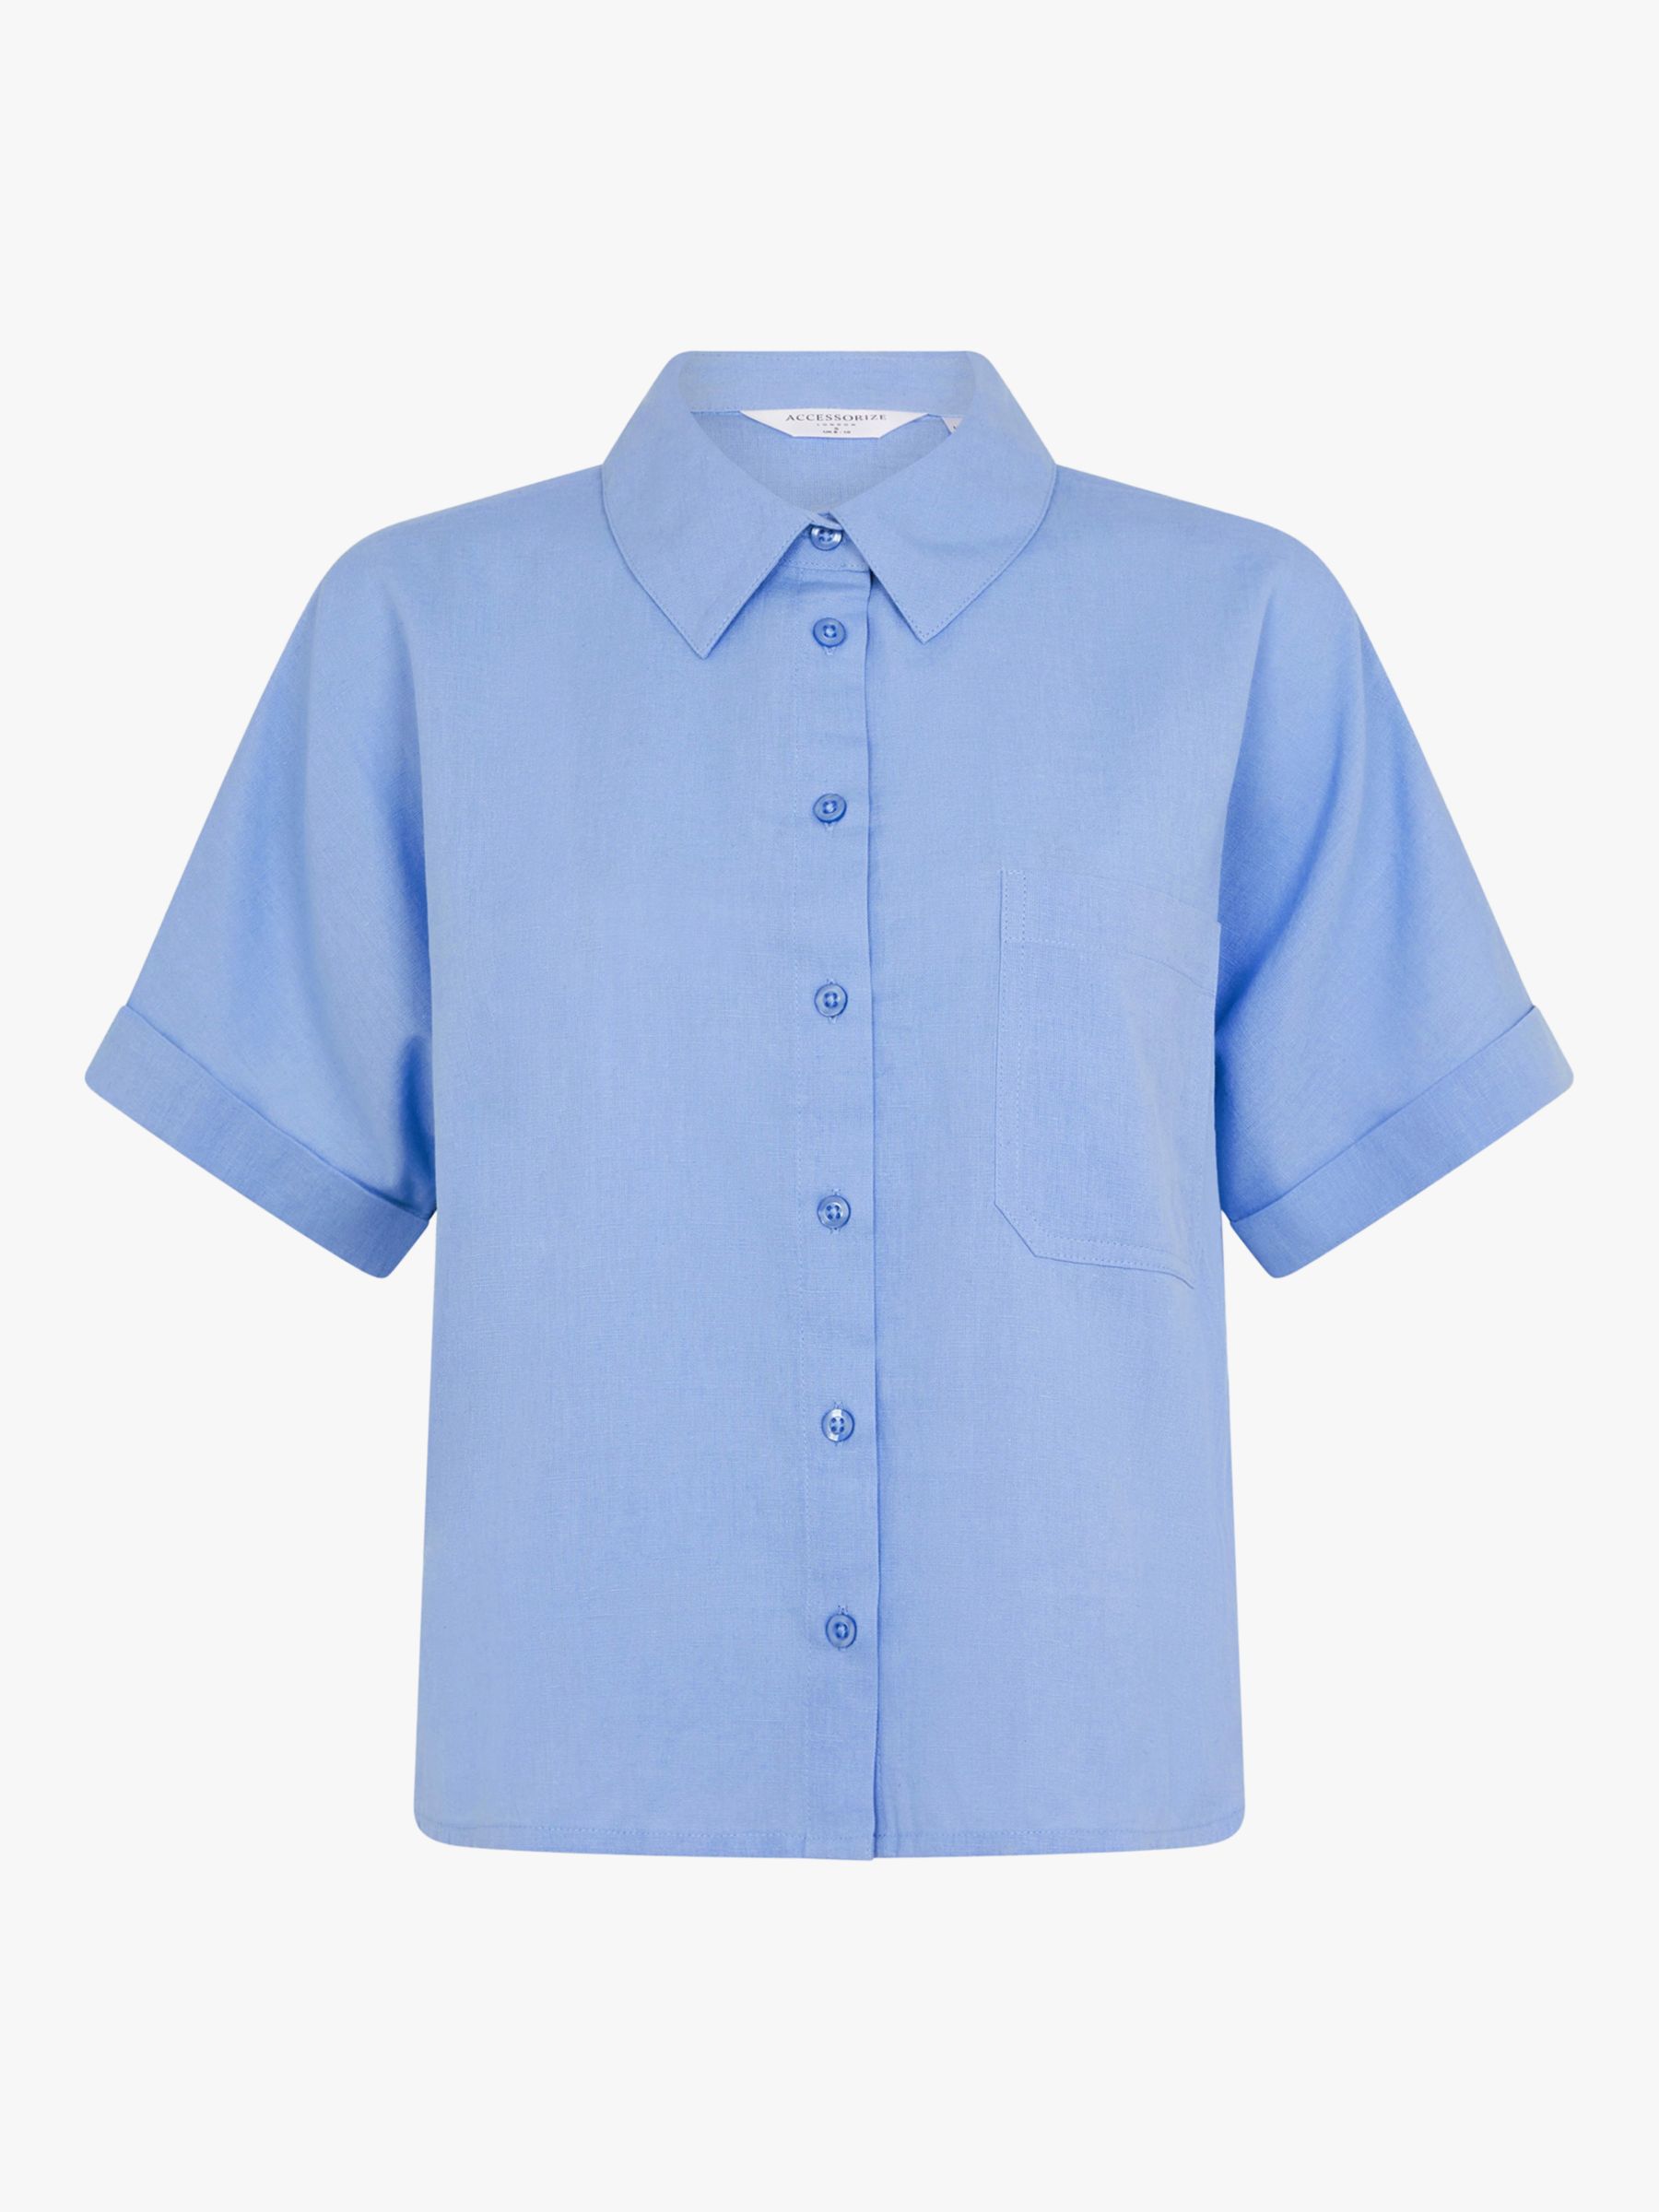 Accessorize Boxy Linen Blend Beach Shirt, Mid Blue, M